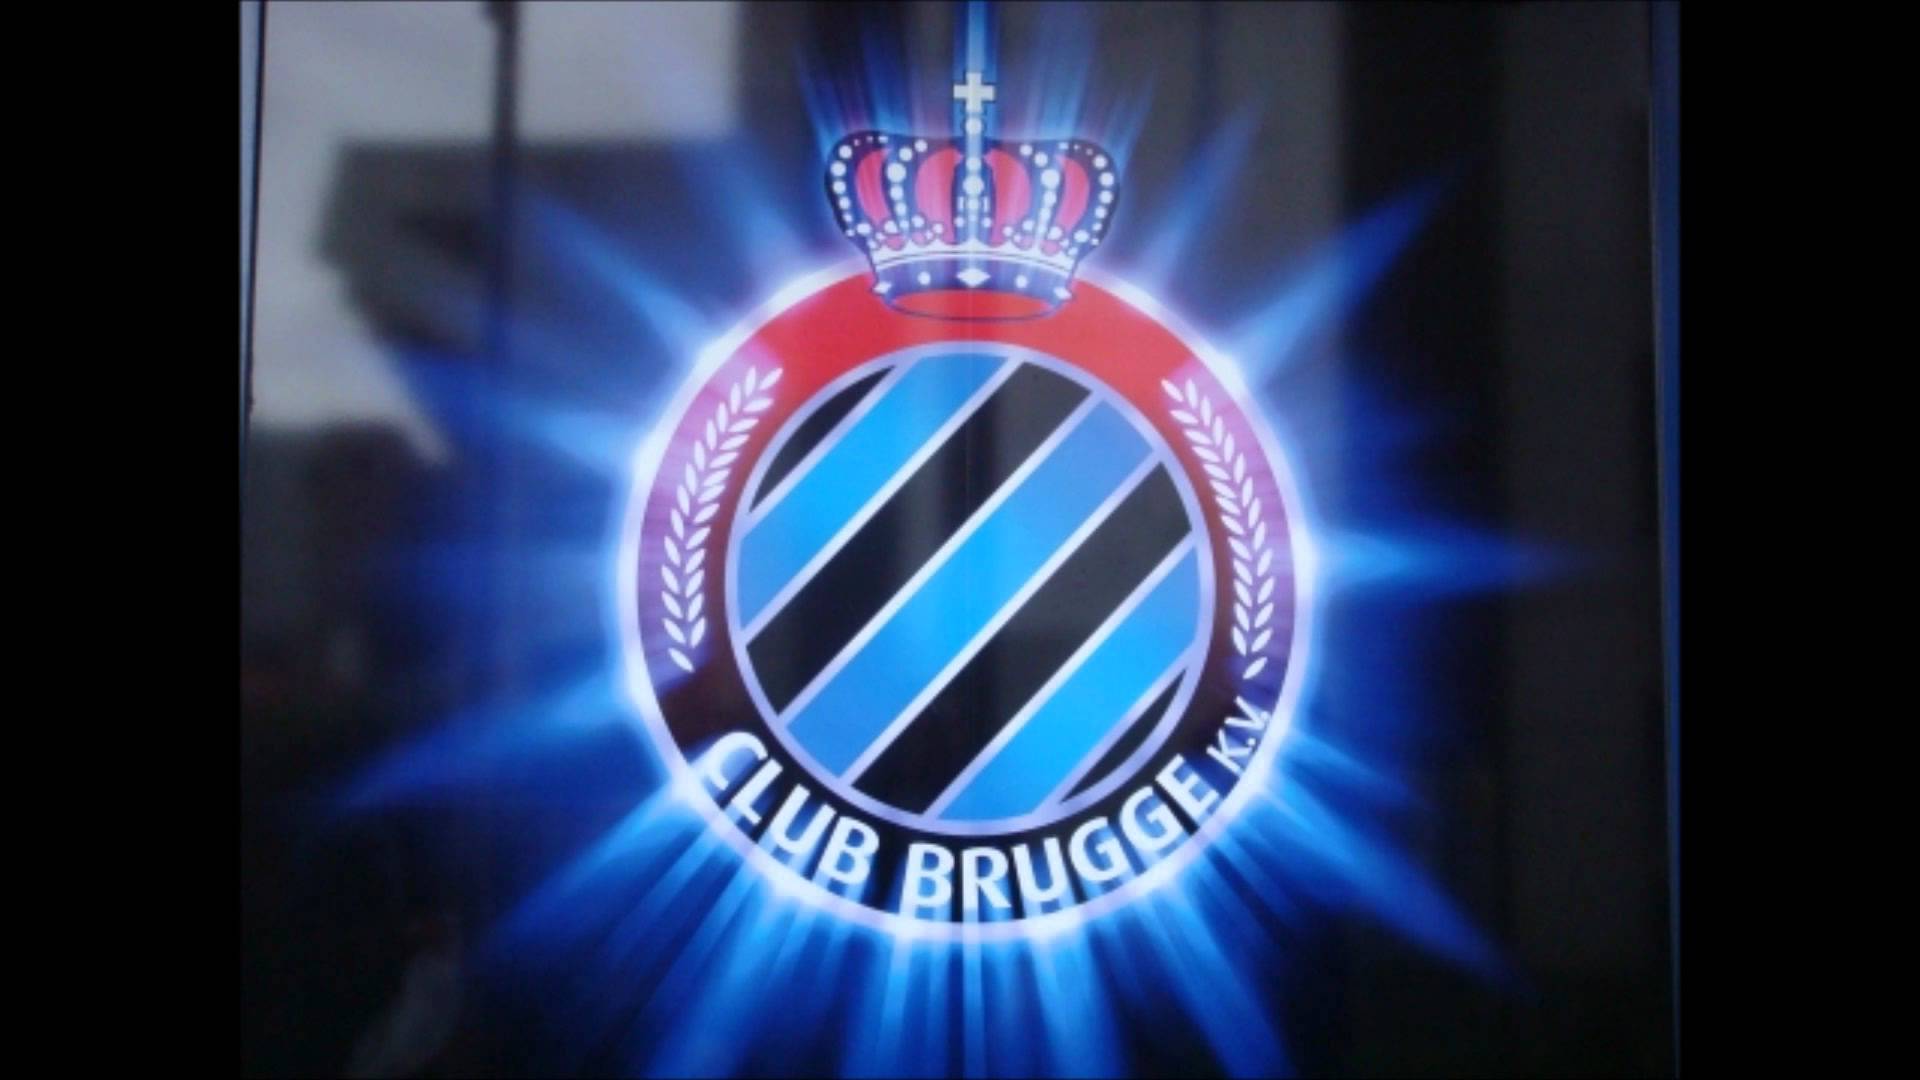 Club Brugge Kv Wallpapers